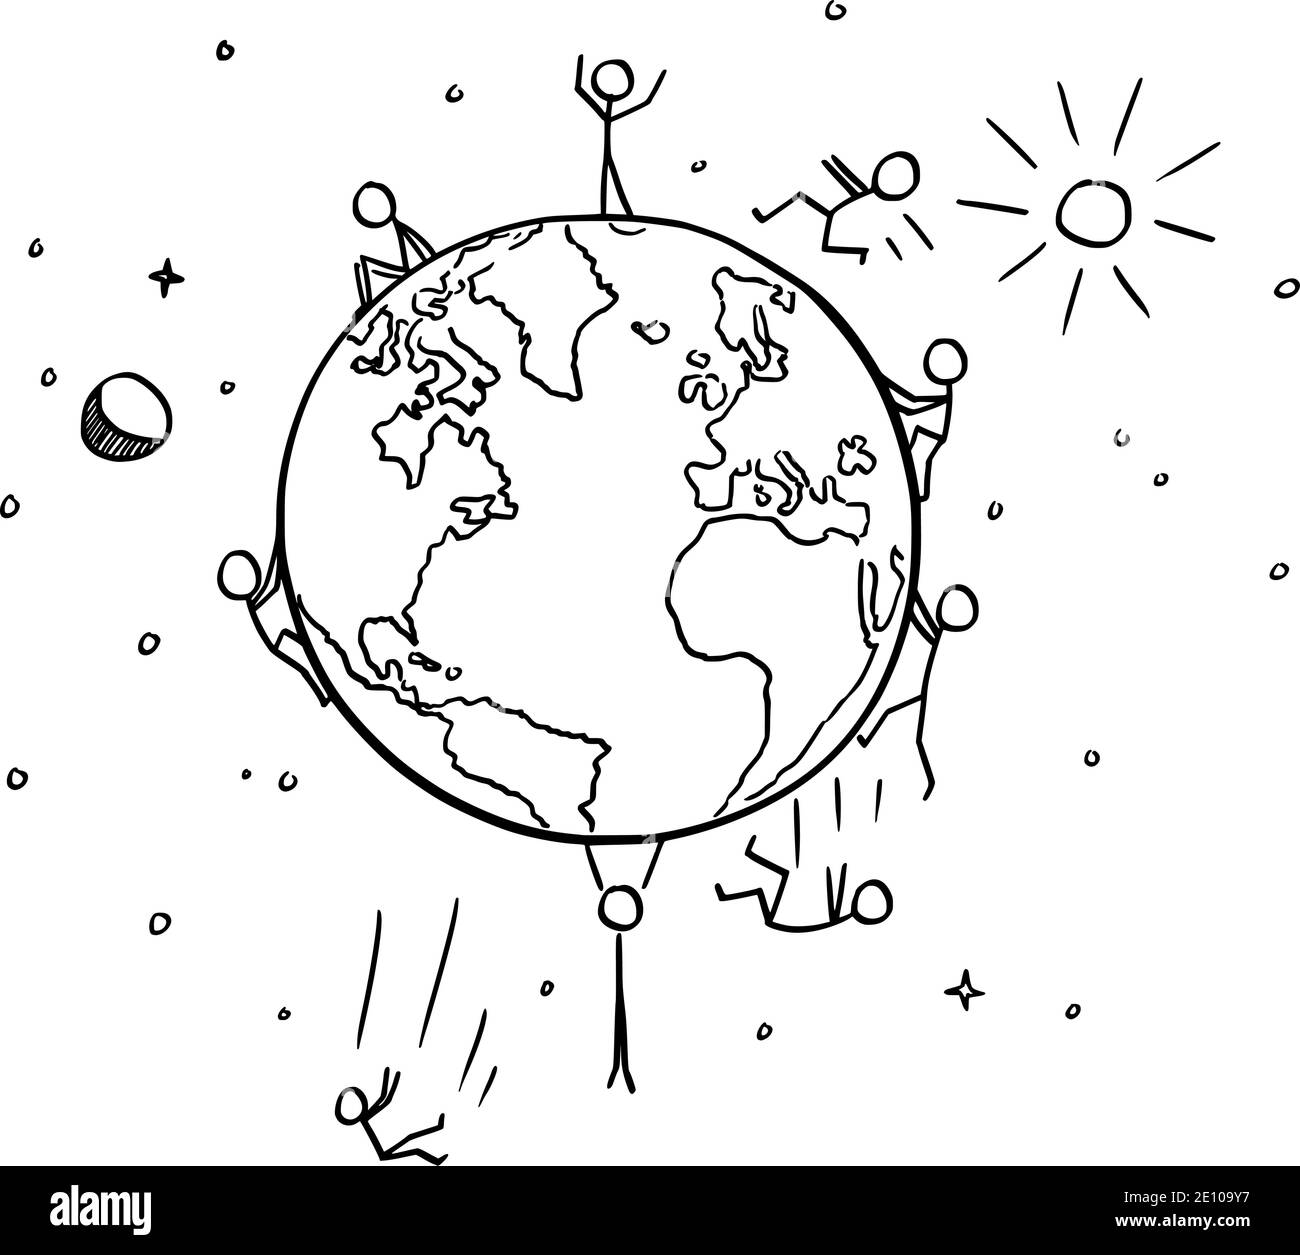 Vector de dibujos animados palo ilustración de la gente que cae del planeta esférico Tierra. Conspiración o teoría de la Tierra plana. Ilustración del Vector